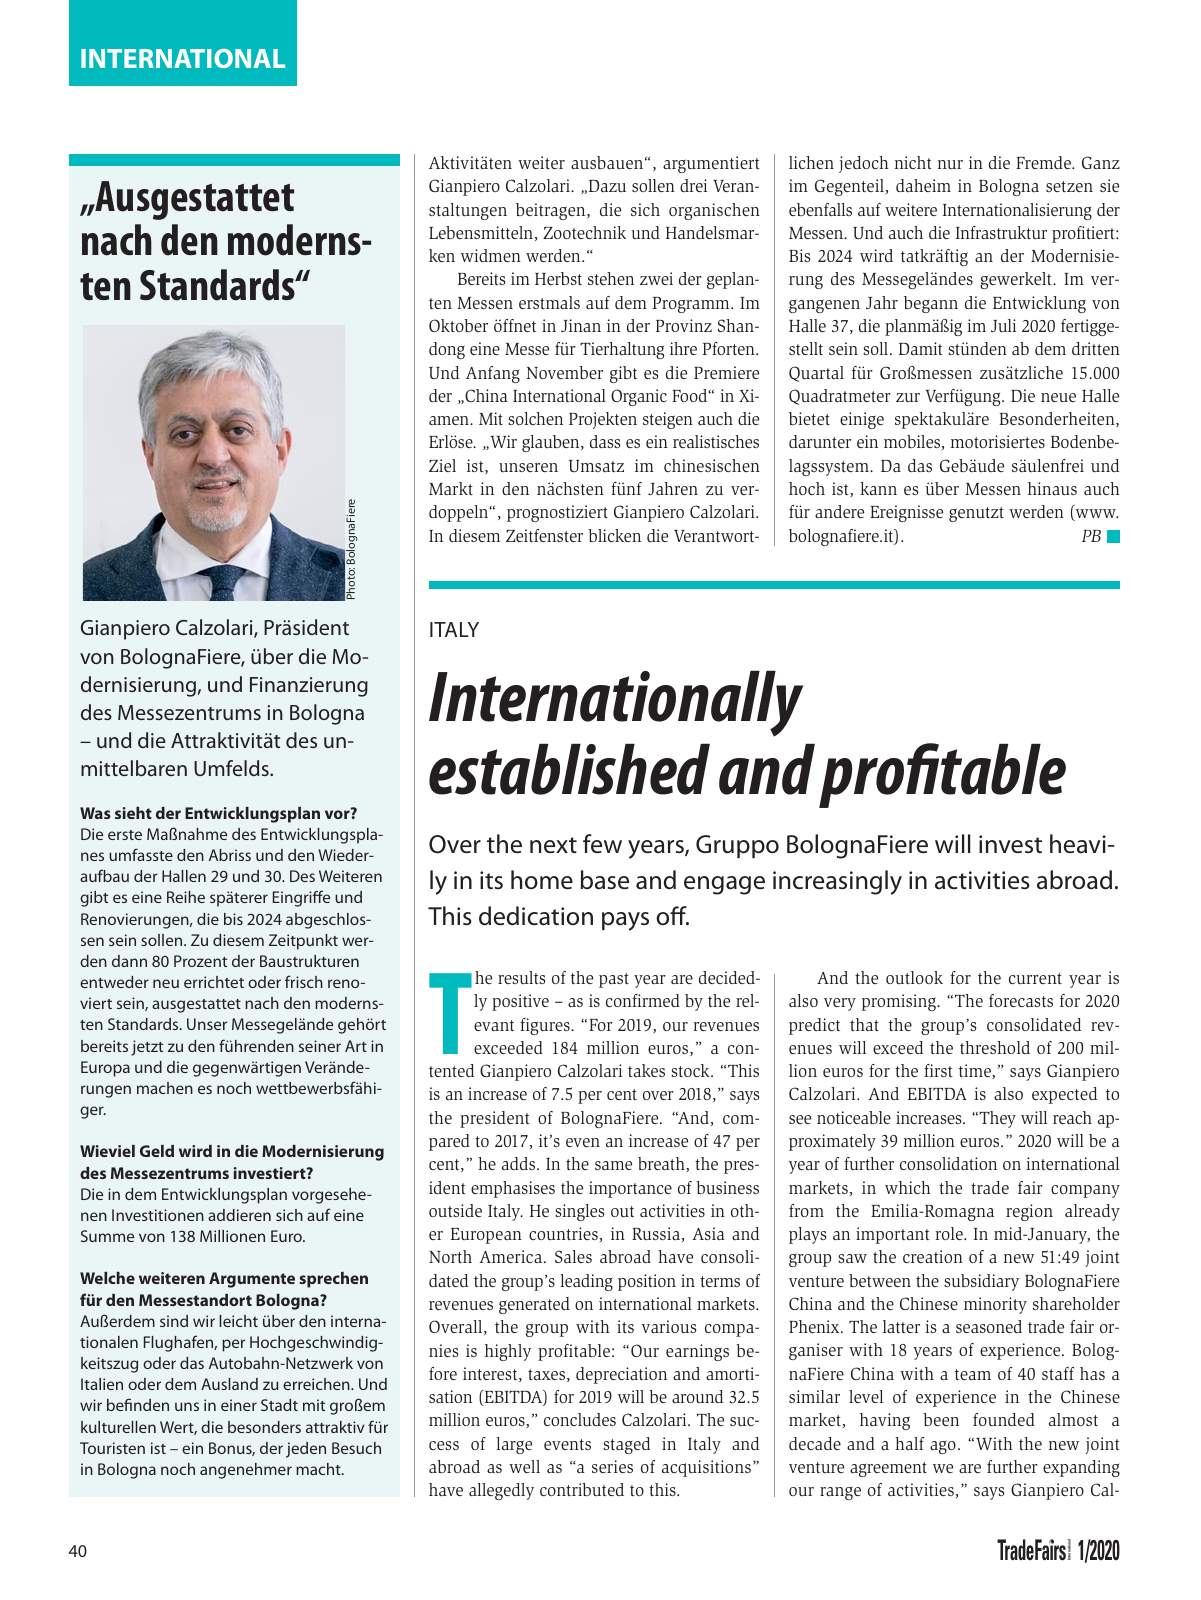 Vorschau TFI Trade-Fairs-International 01/2020 Seite 40